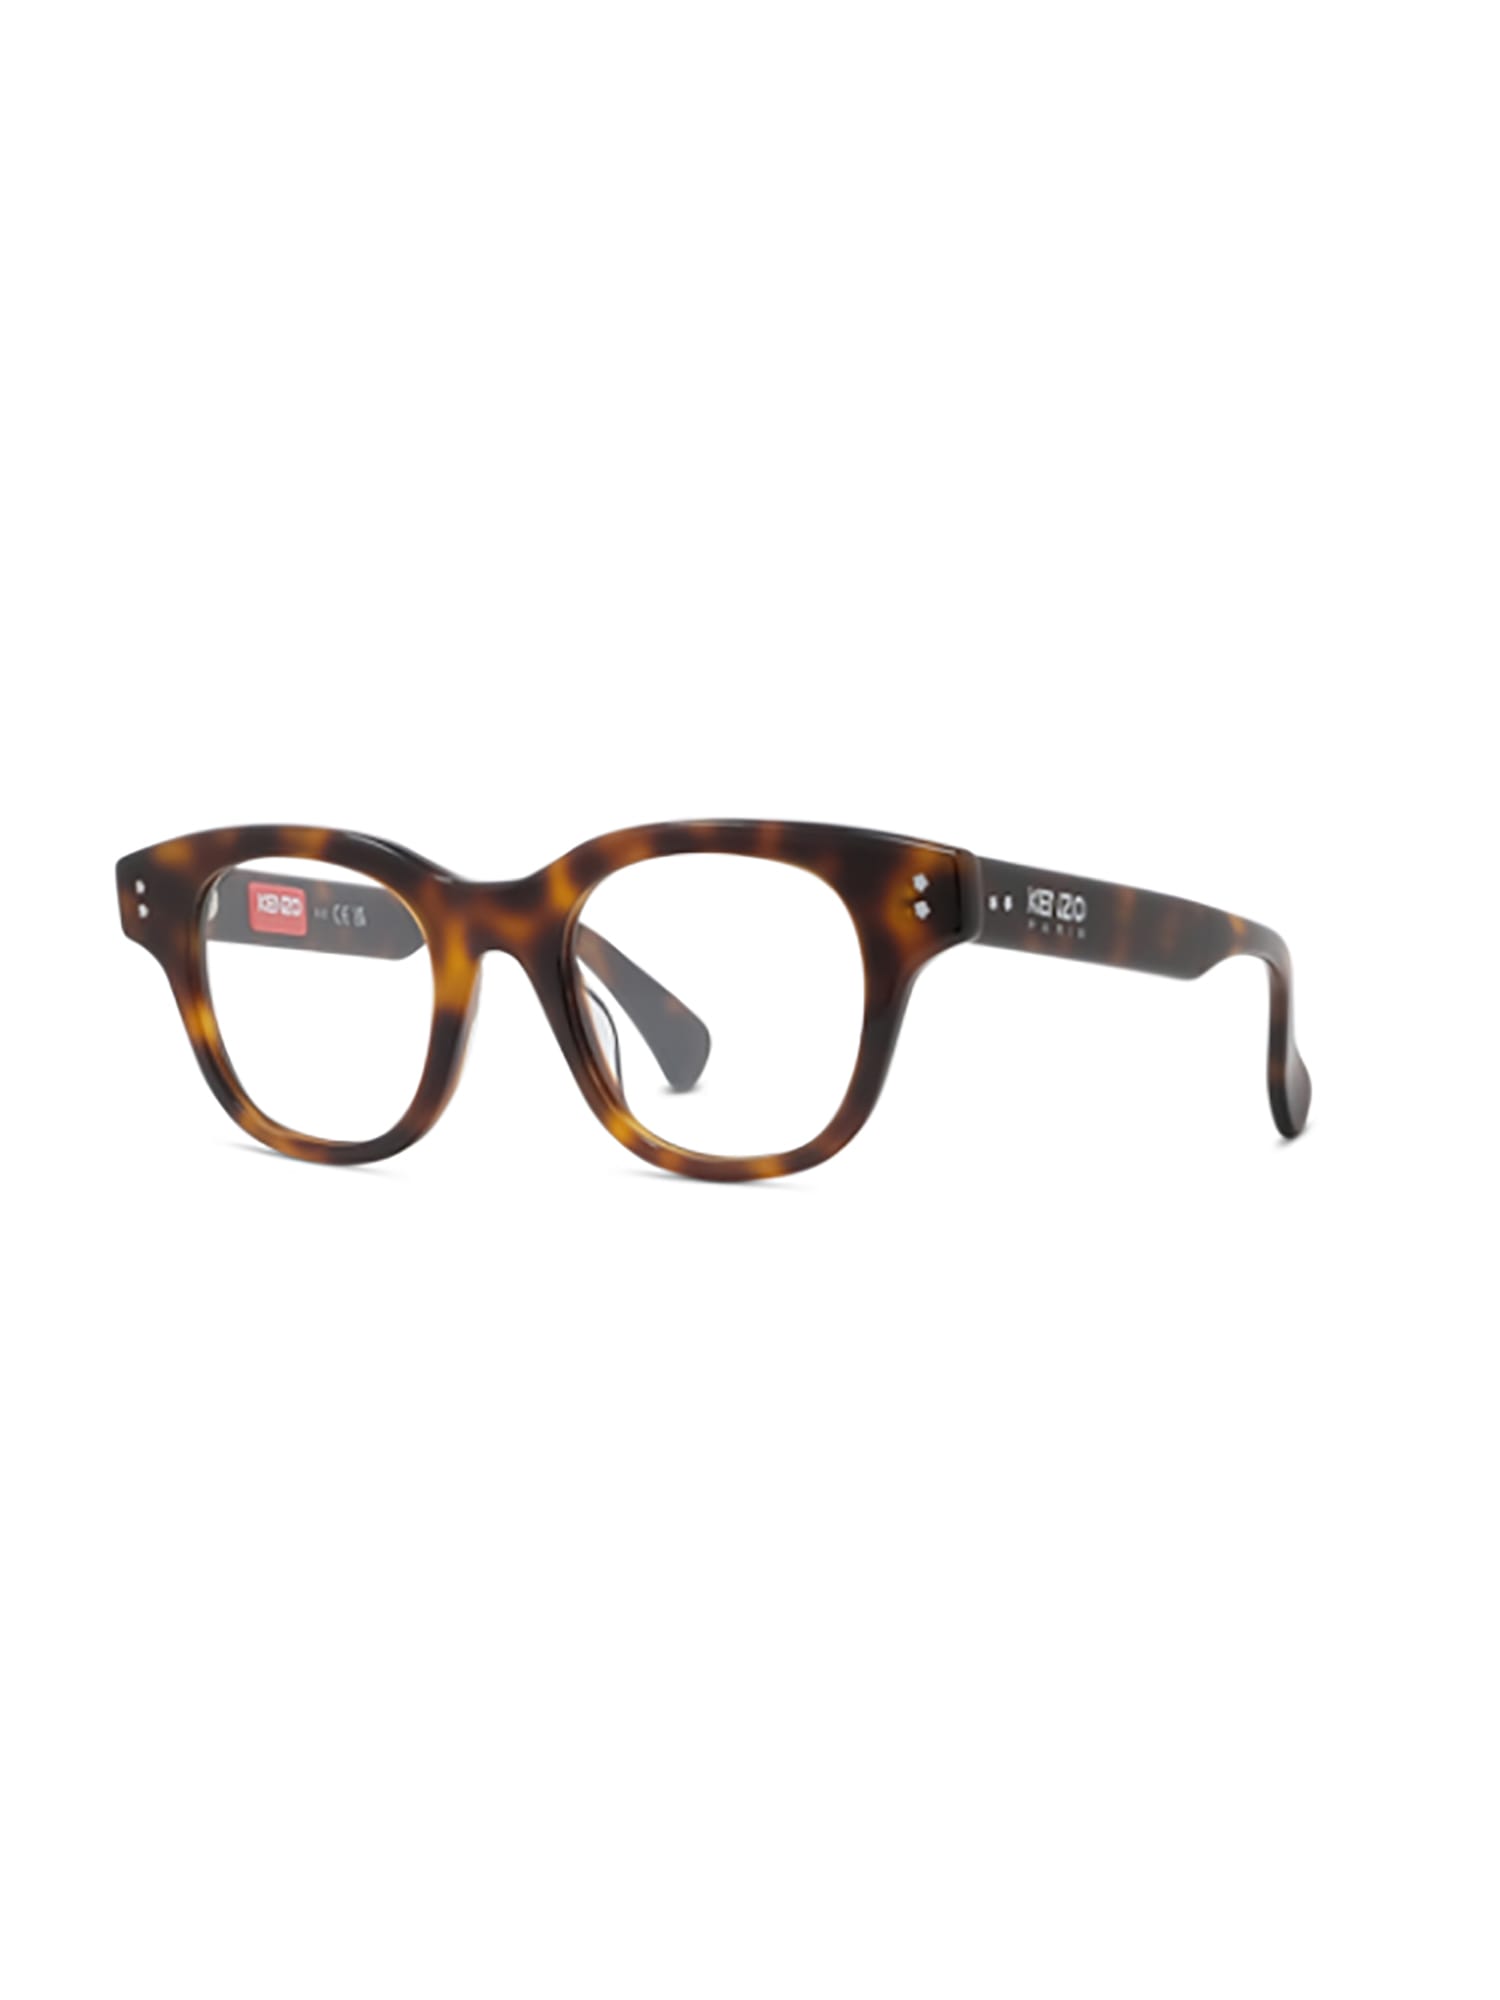 Kenzo, Accessories, Final Price New Kenzo Kz5083u 06 Eyeglasses